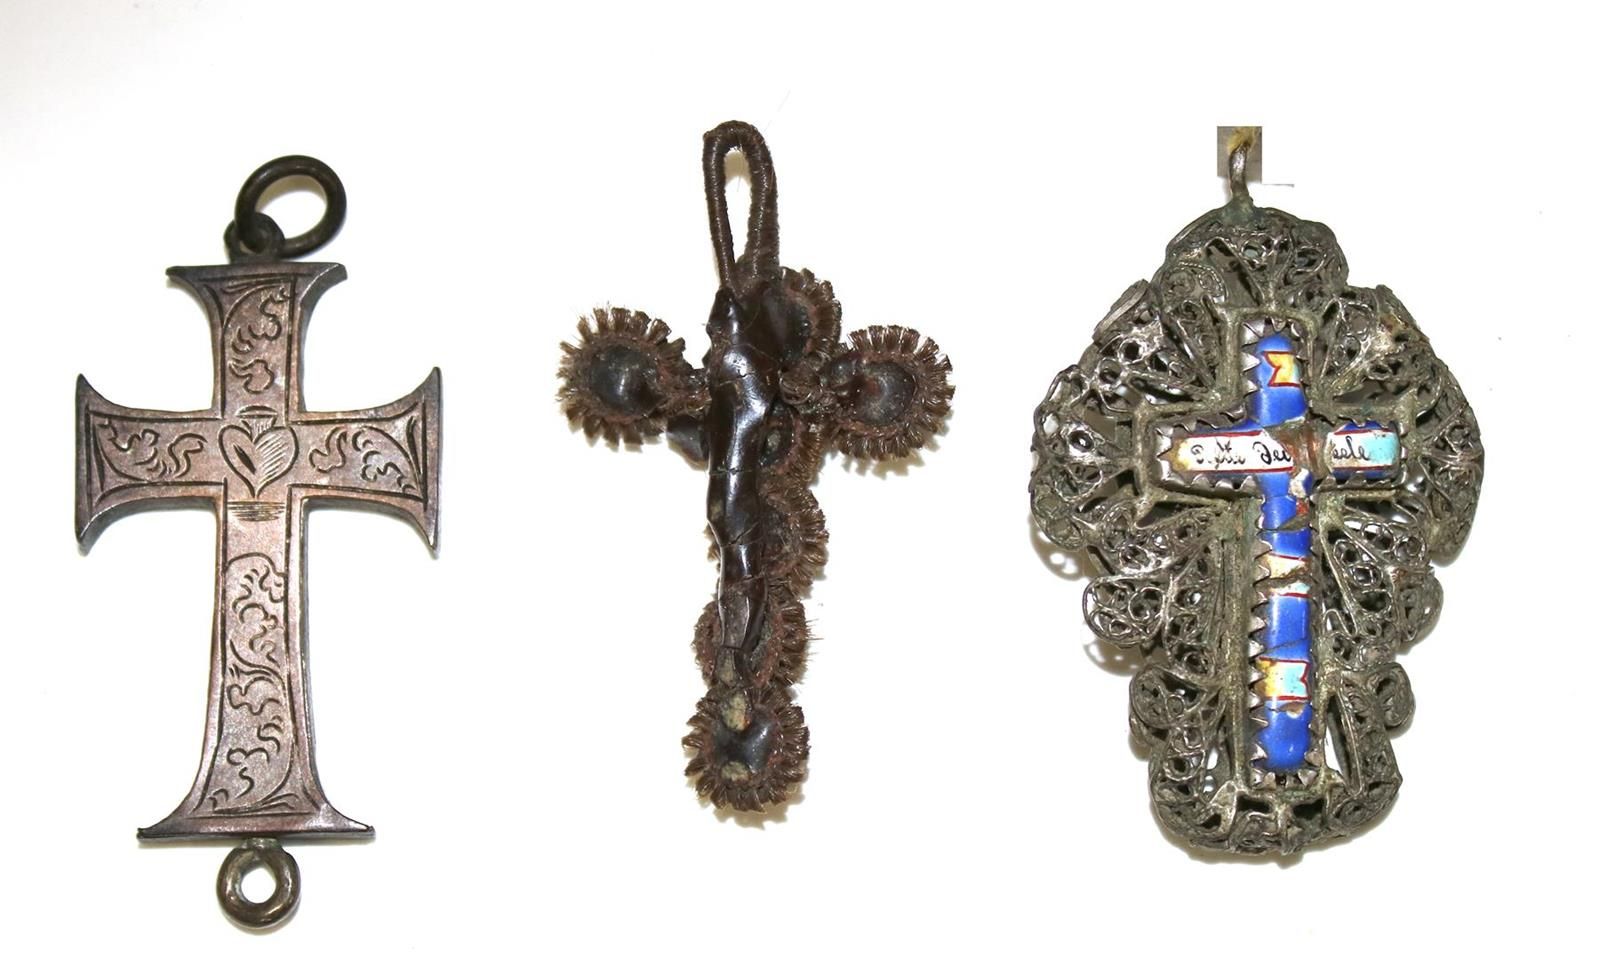 Kruzifixe, Reliquienkreuz. 3 个十字架，约 1820 - 1860 年。 带蓝色玻璃珠的 Biedermeier 发式十字架。银质十&hellip;